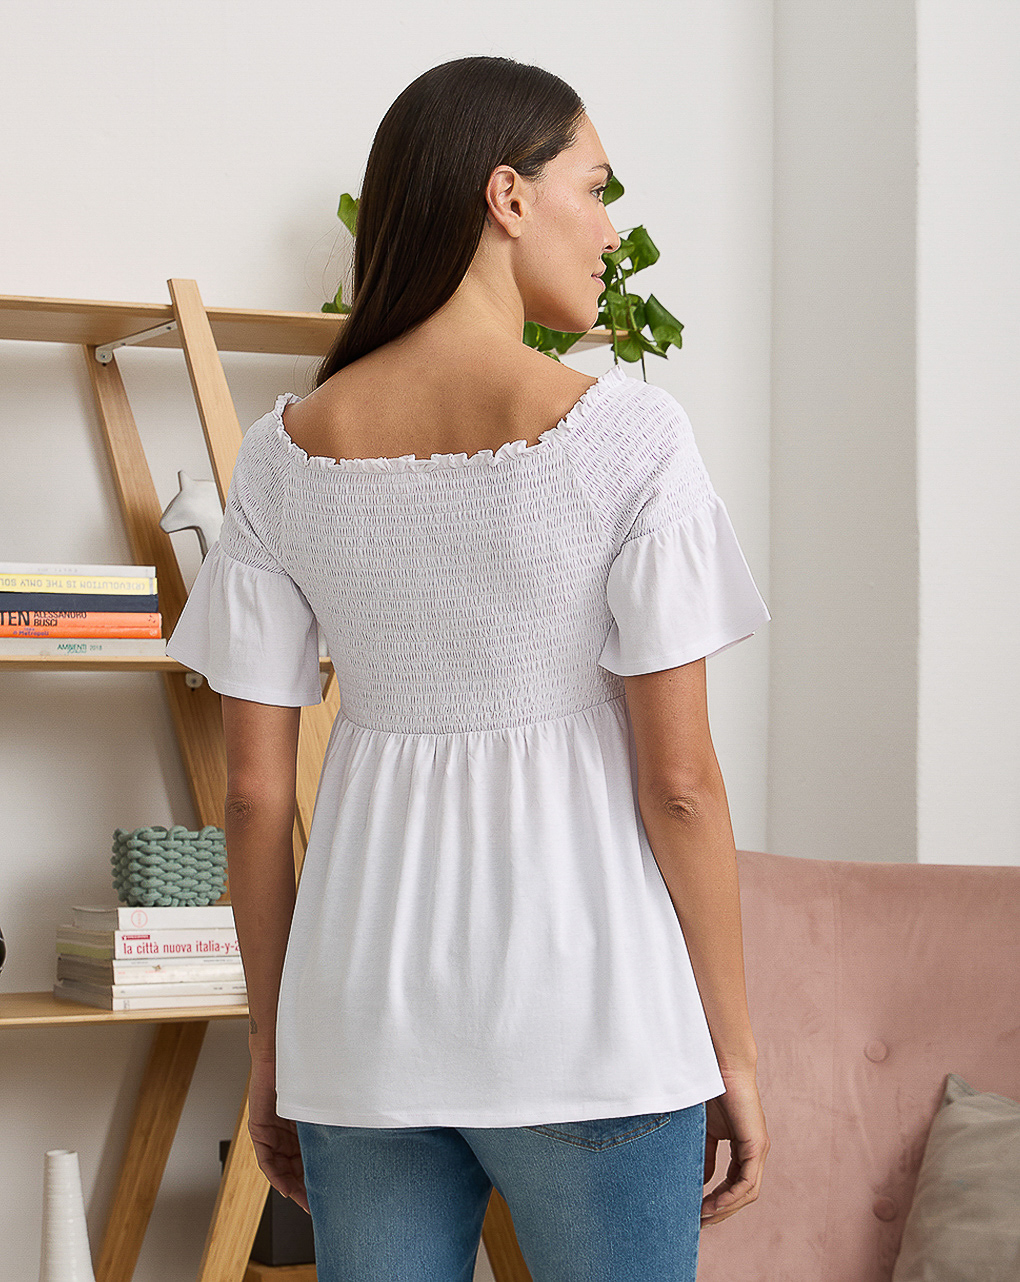 γυναικείο t-shirt εγκυμοσύνης/θηλασμού λευκό με σφηκοφωλιά - Prénatal